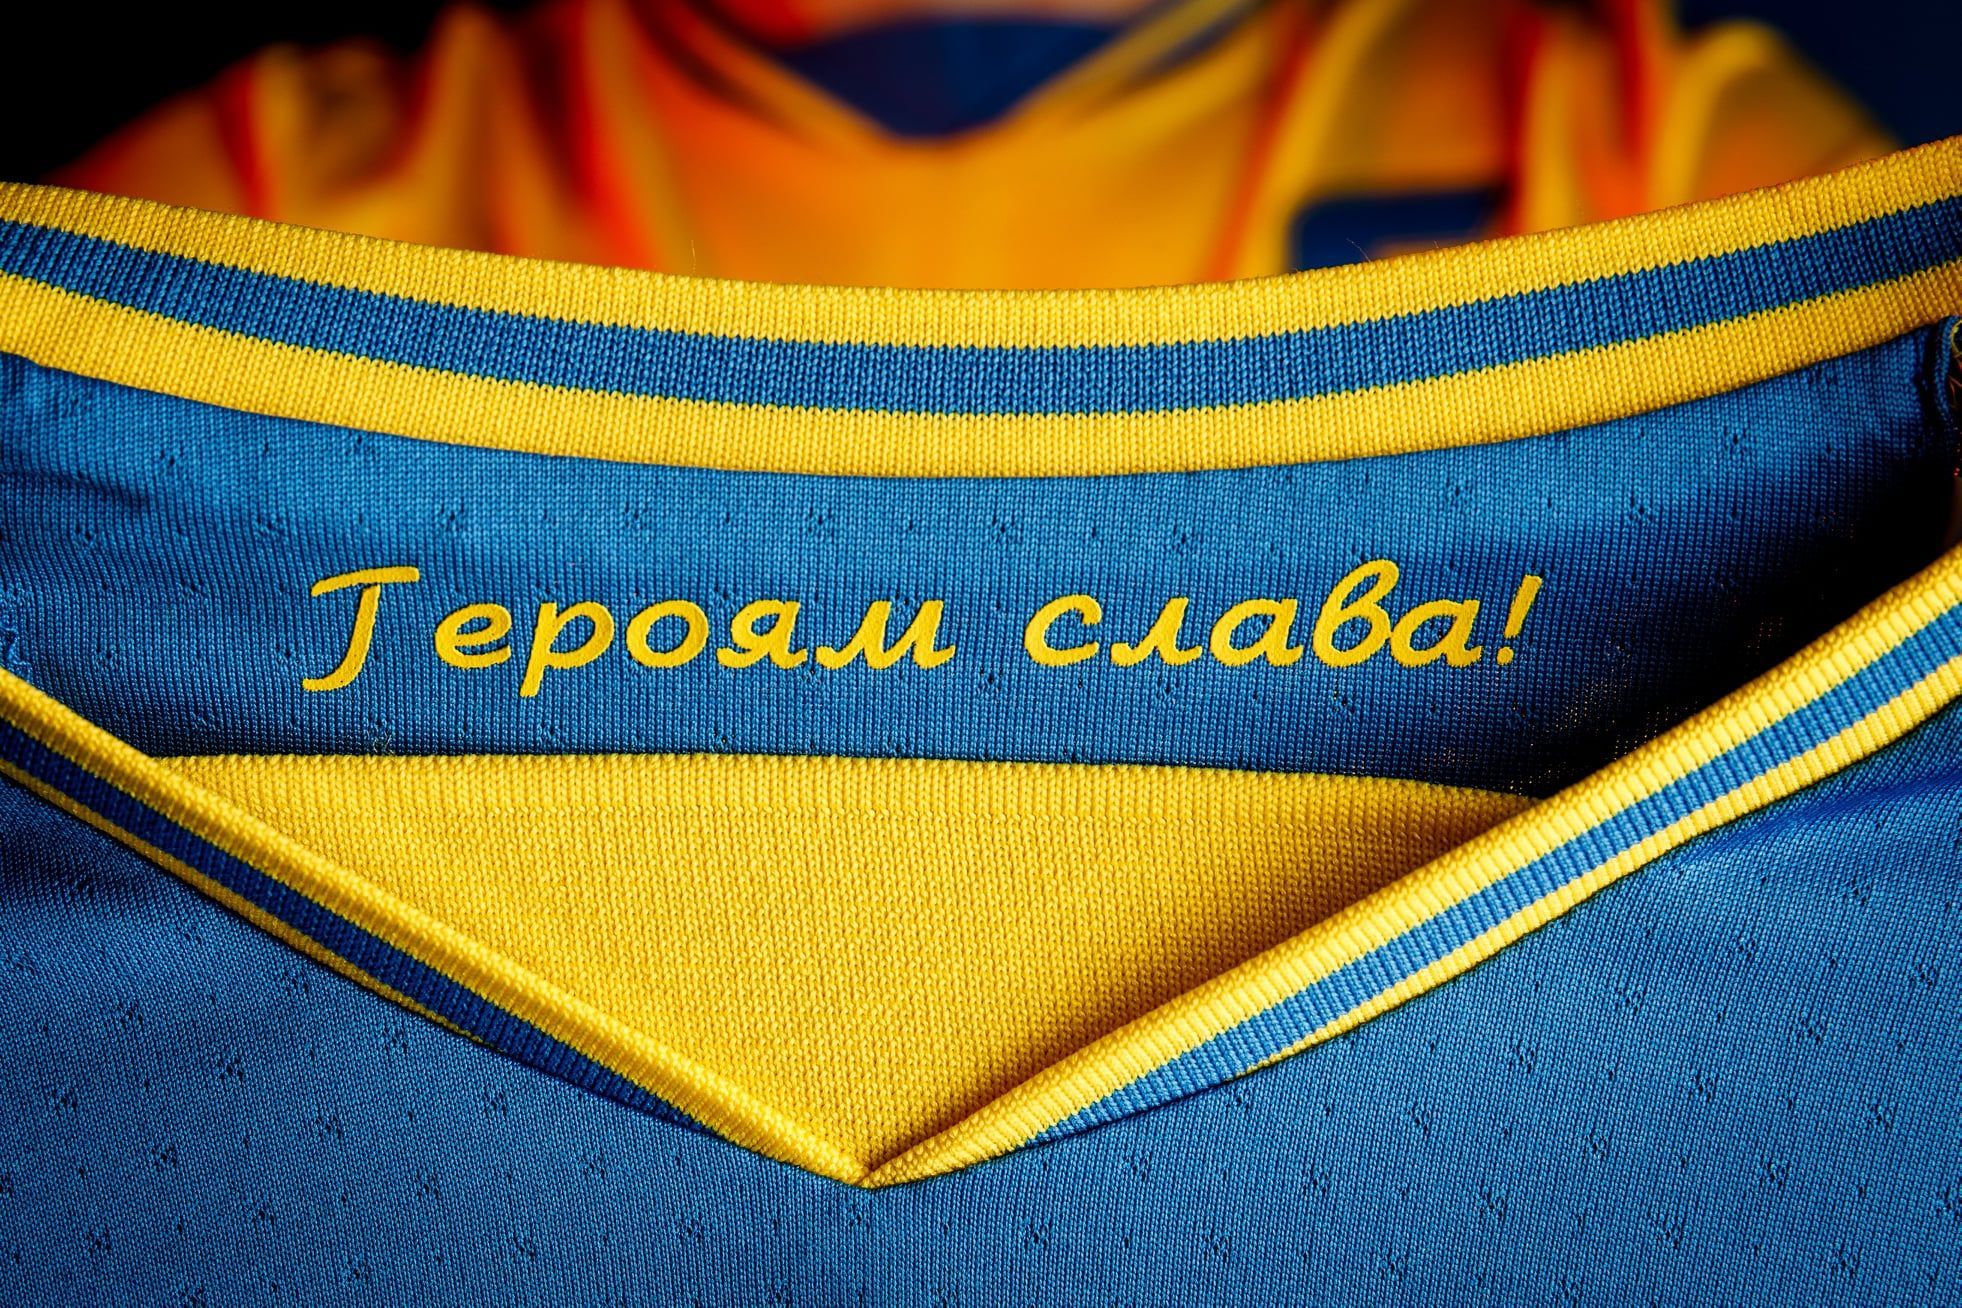 Есть ли у Украины шанс вернуть лозунг "Героям слава" на форму сборной